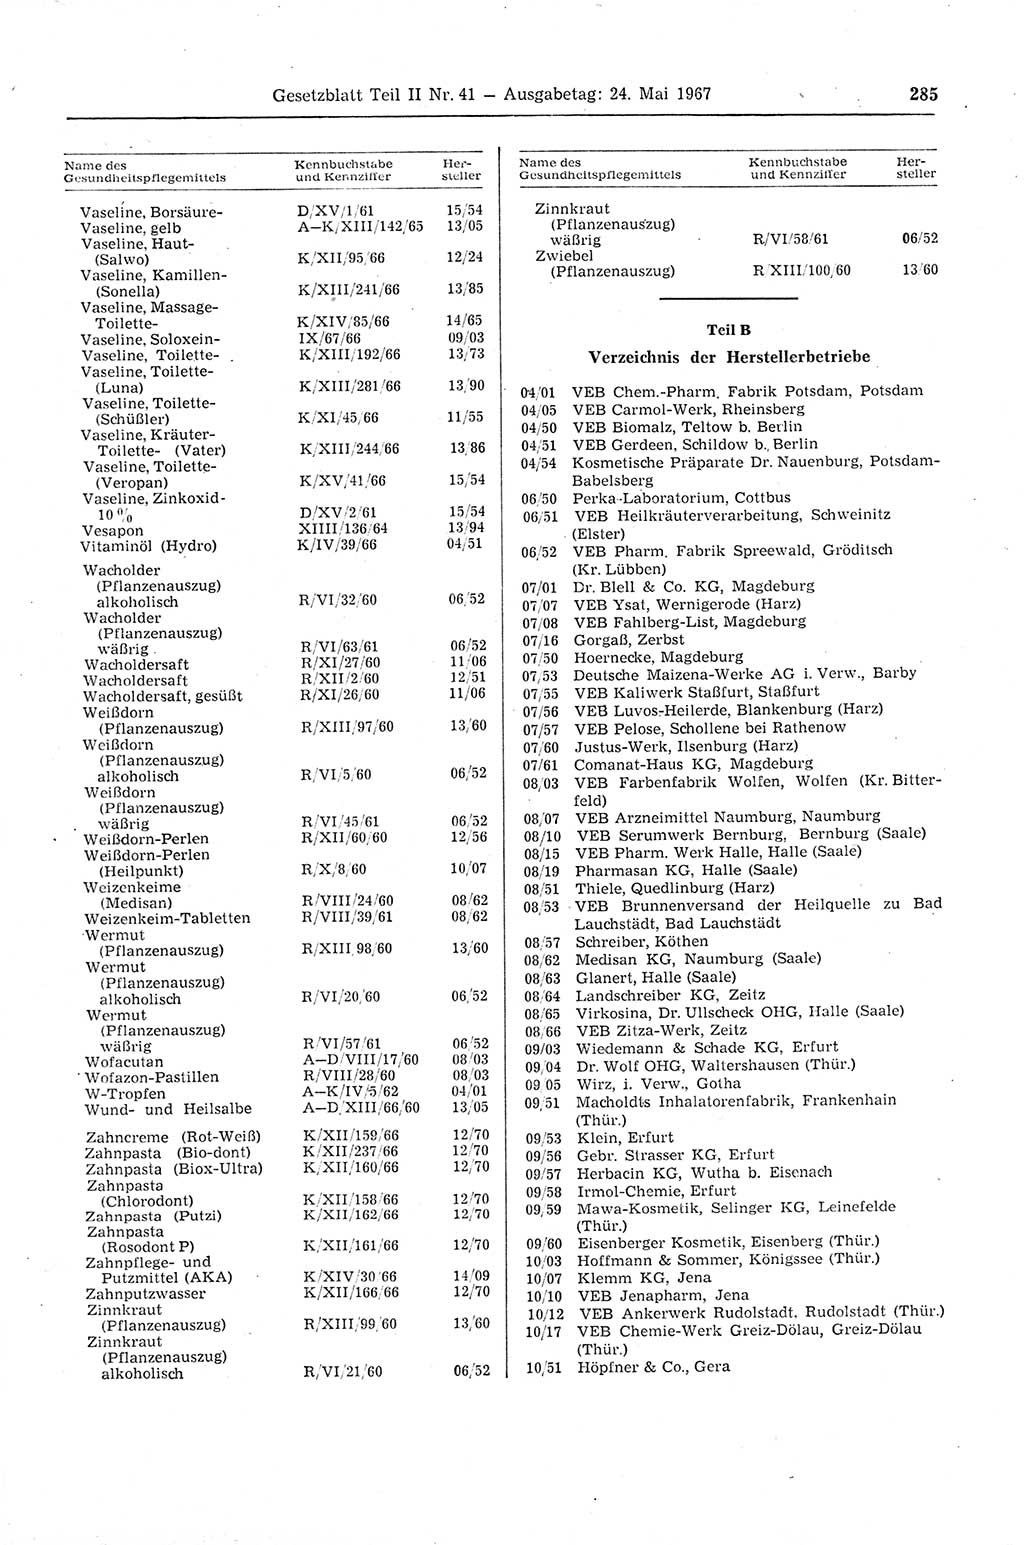 Gesetzblatt (GBl.) der Deutschen Demokratischen Republik (DDR) Teil ⅠⅠ 1967, Seite 285 (GBl. DDR ⅠⅠ 1967, S. 285)